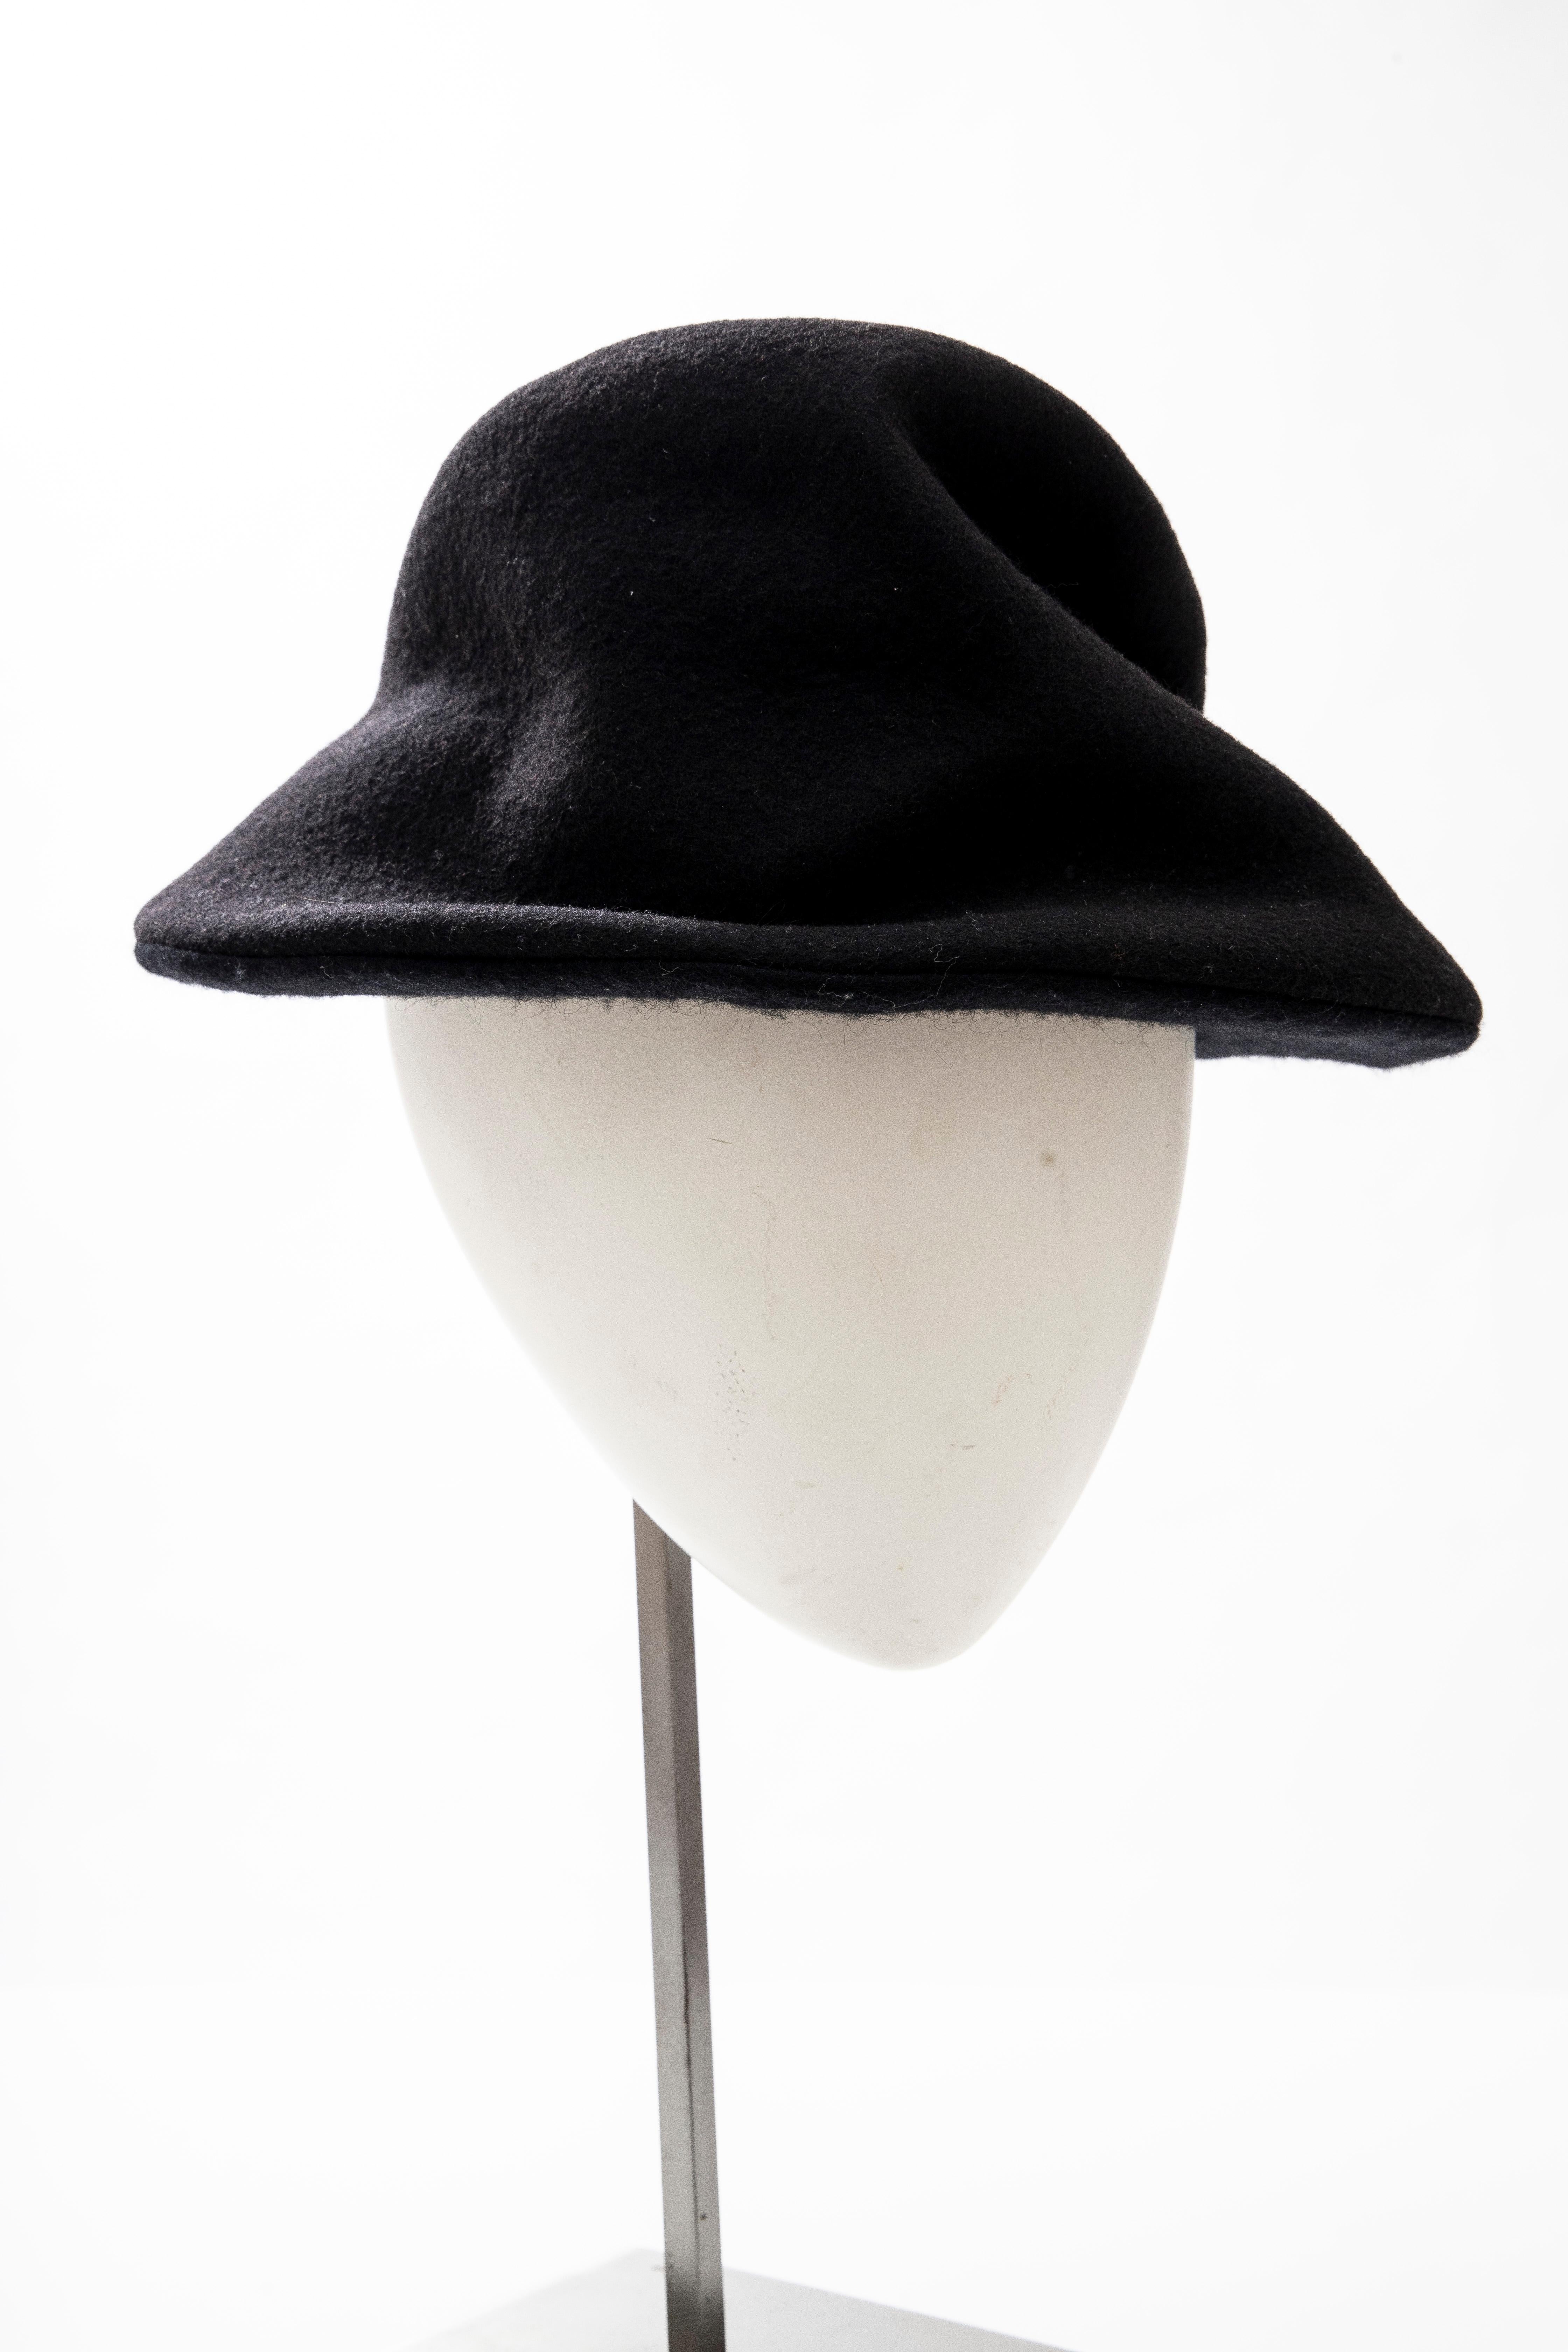  Yohji Yamamoto black asymmetrical felted wool hat with brim.

Circumference: 25